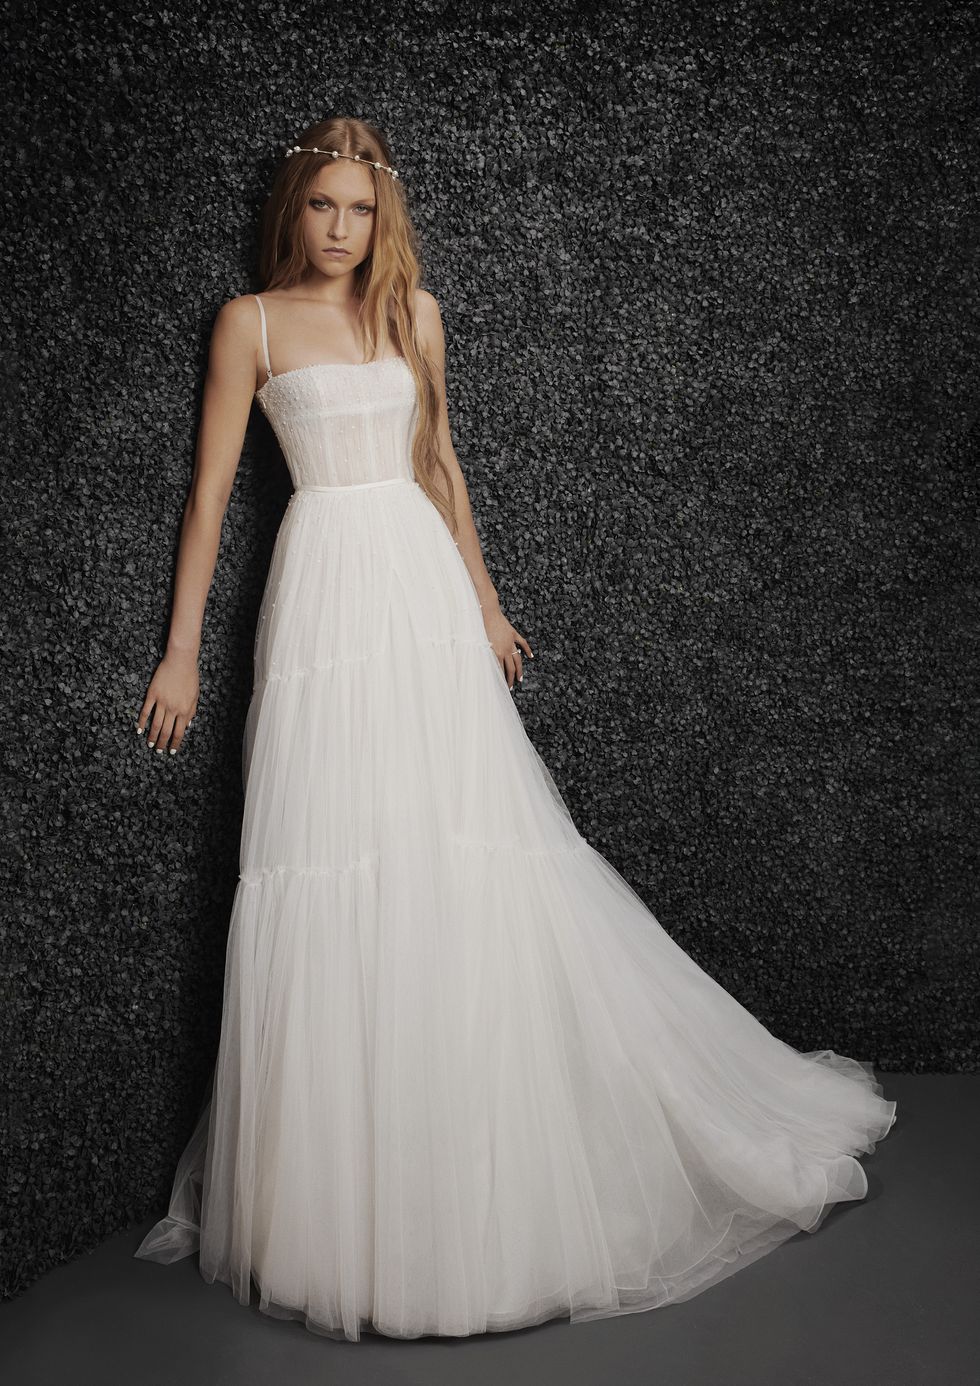 MARGOT | Princess wedding dress with V-neck | Vera Wang Bride